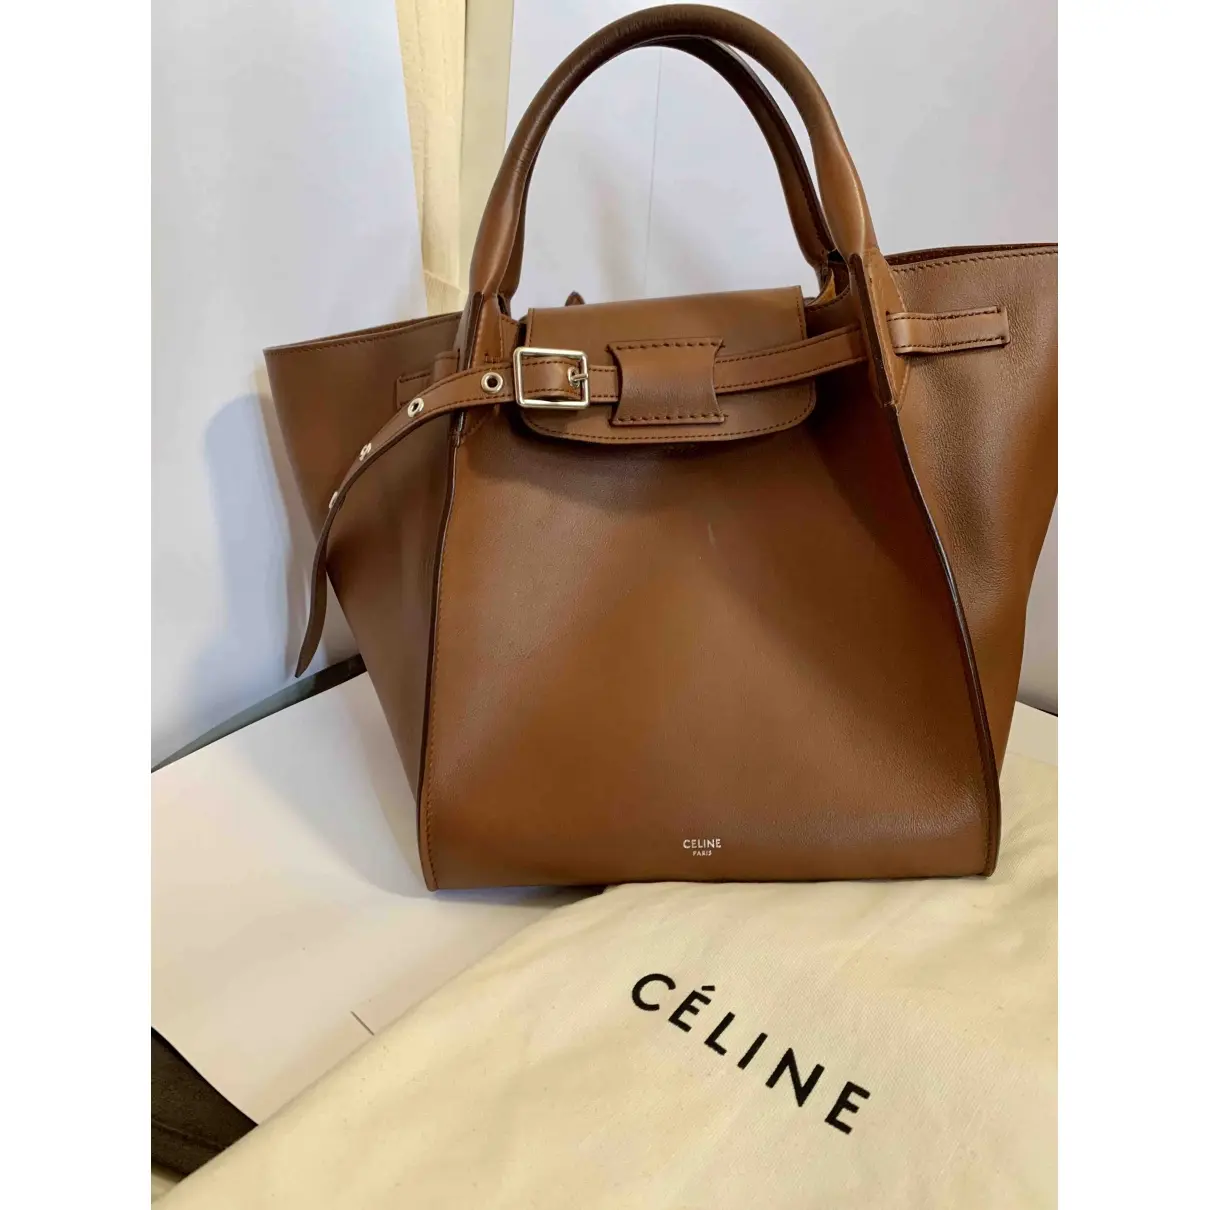 Buy Celine Big Bag leather handbag online